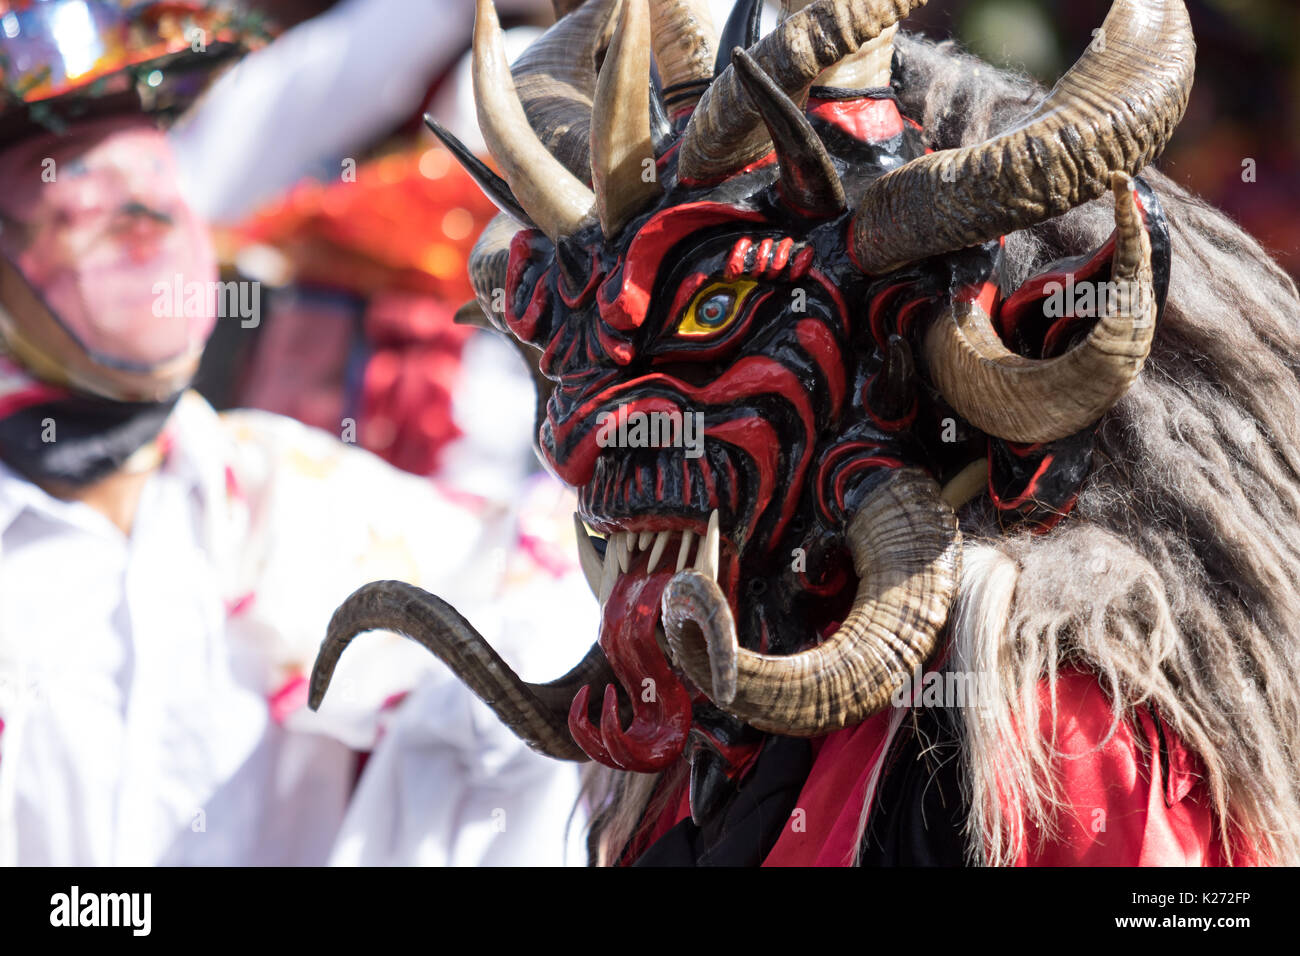 Junio 17, 2017 Pujili, Ecuador: primer plano de un bailarín con coloridos traditiona mascarilla desgastada en el desfile anual del Corpus Christi Foto de stock